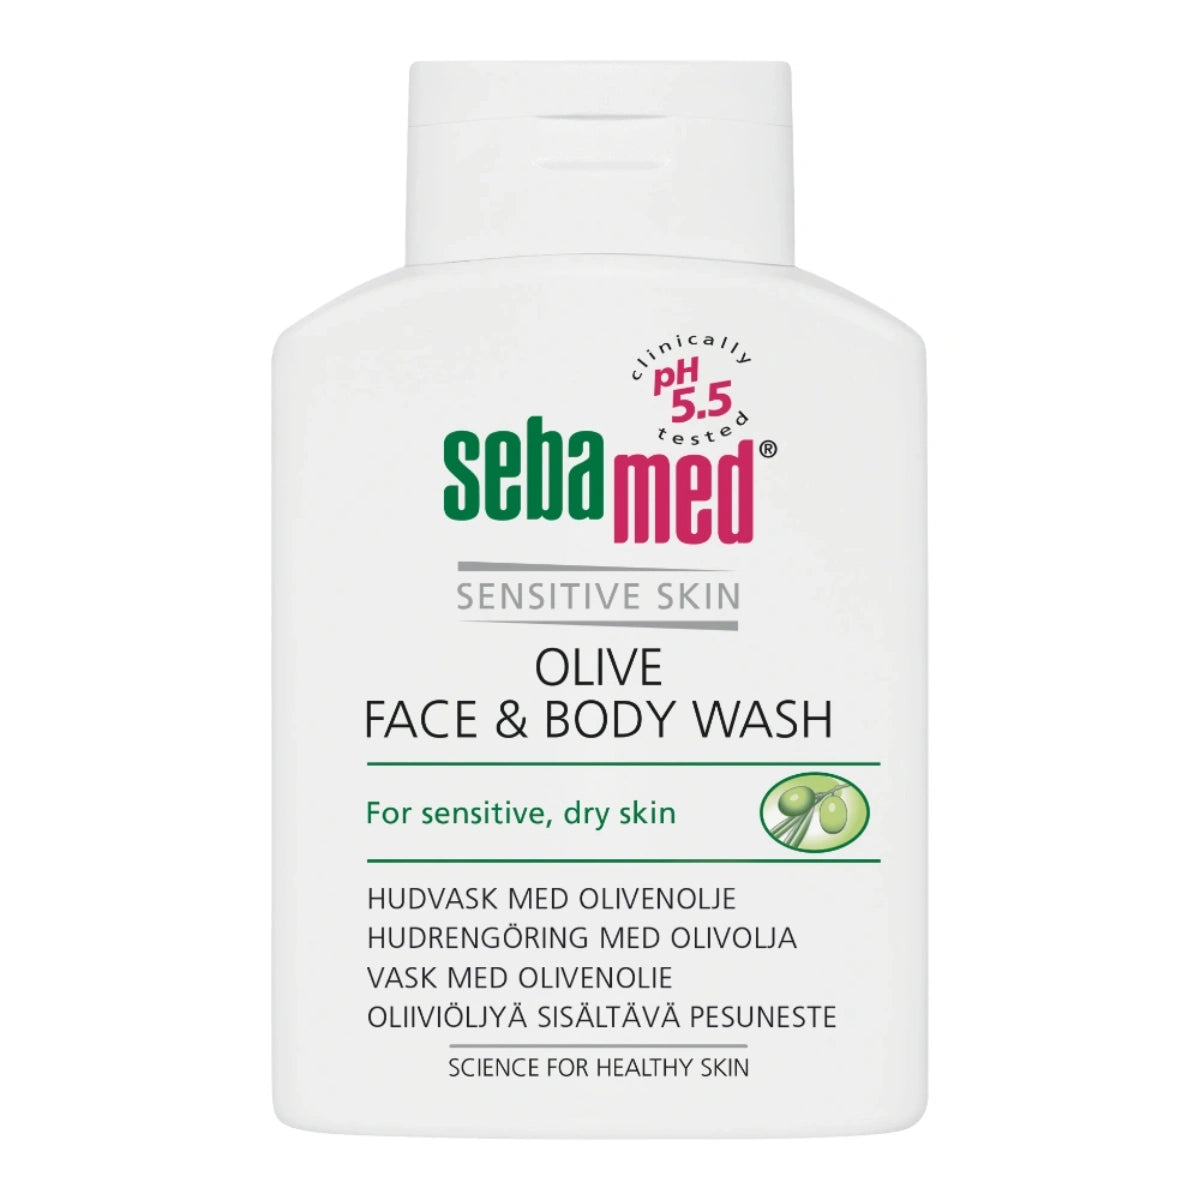 SEBAMED Olive Face & Body Wash pesuneste 200 ml erityisesti kuivalle ja herkälle iholle, sisältää oliiviöljyä